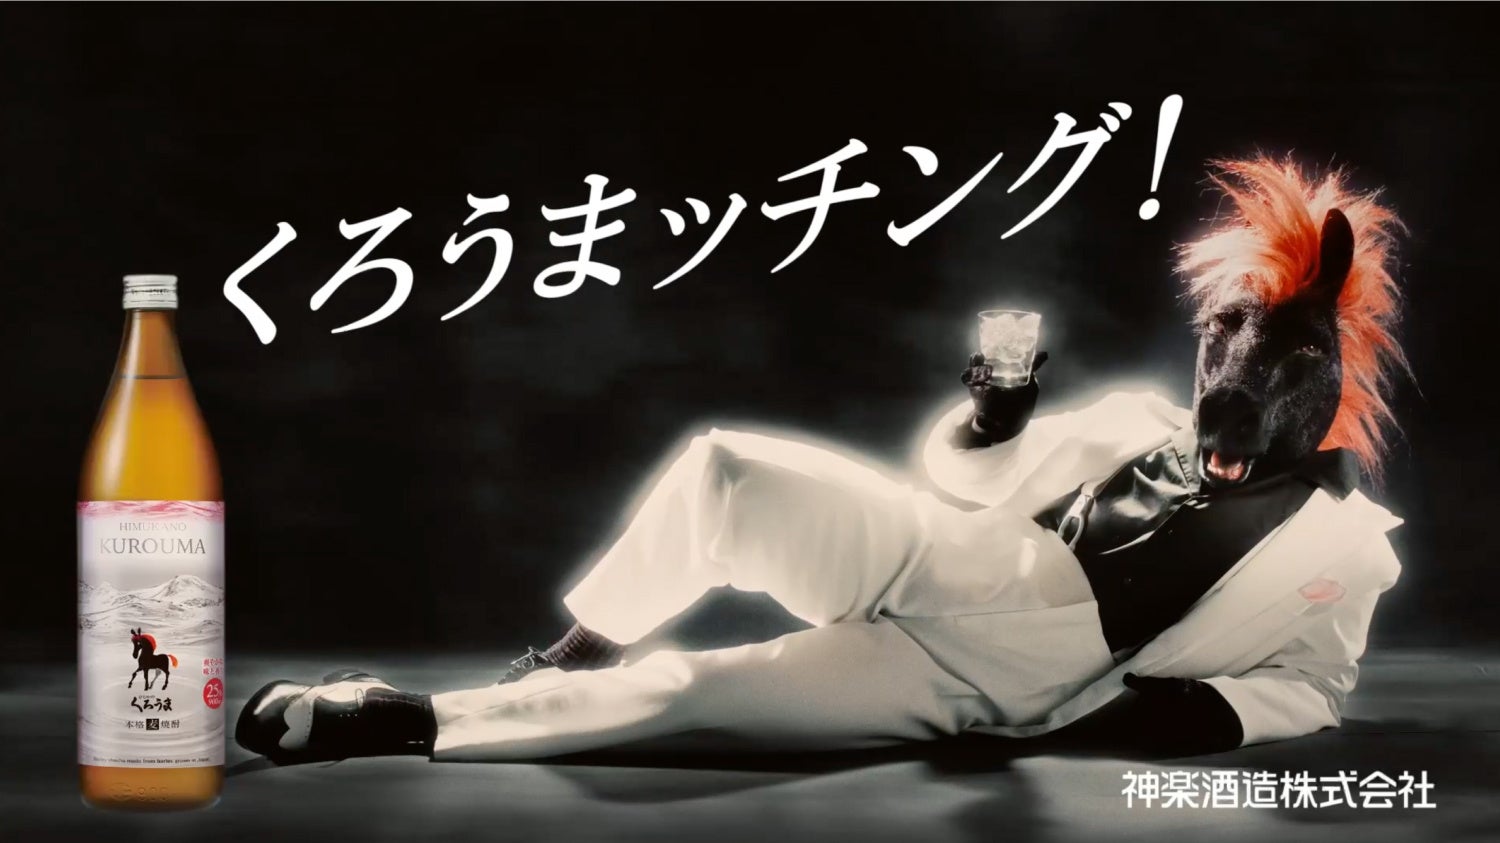 本格麦焼酎「ひむかのくろうま」37年ぶりとなる新パッケージ発売　「塩が合うなら、うまが合う。」をコンセプトに謎の生命体MCウマーがコミカルなダンスを披露する新CMが西日本エリアで放映開始のサブ画像7